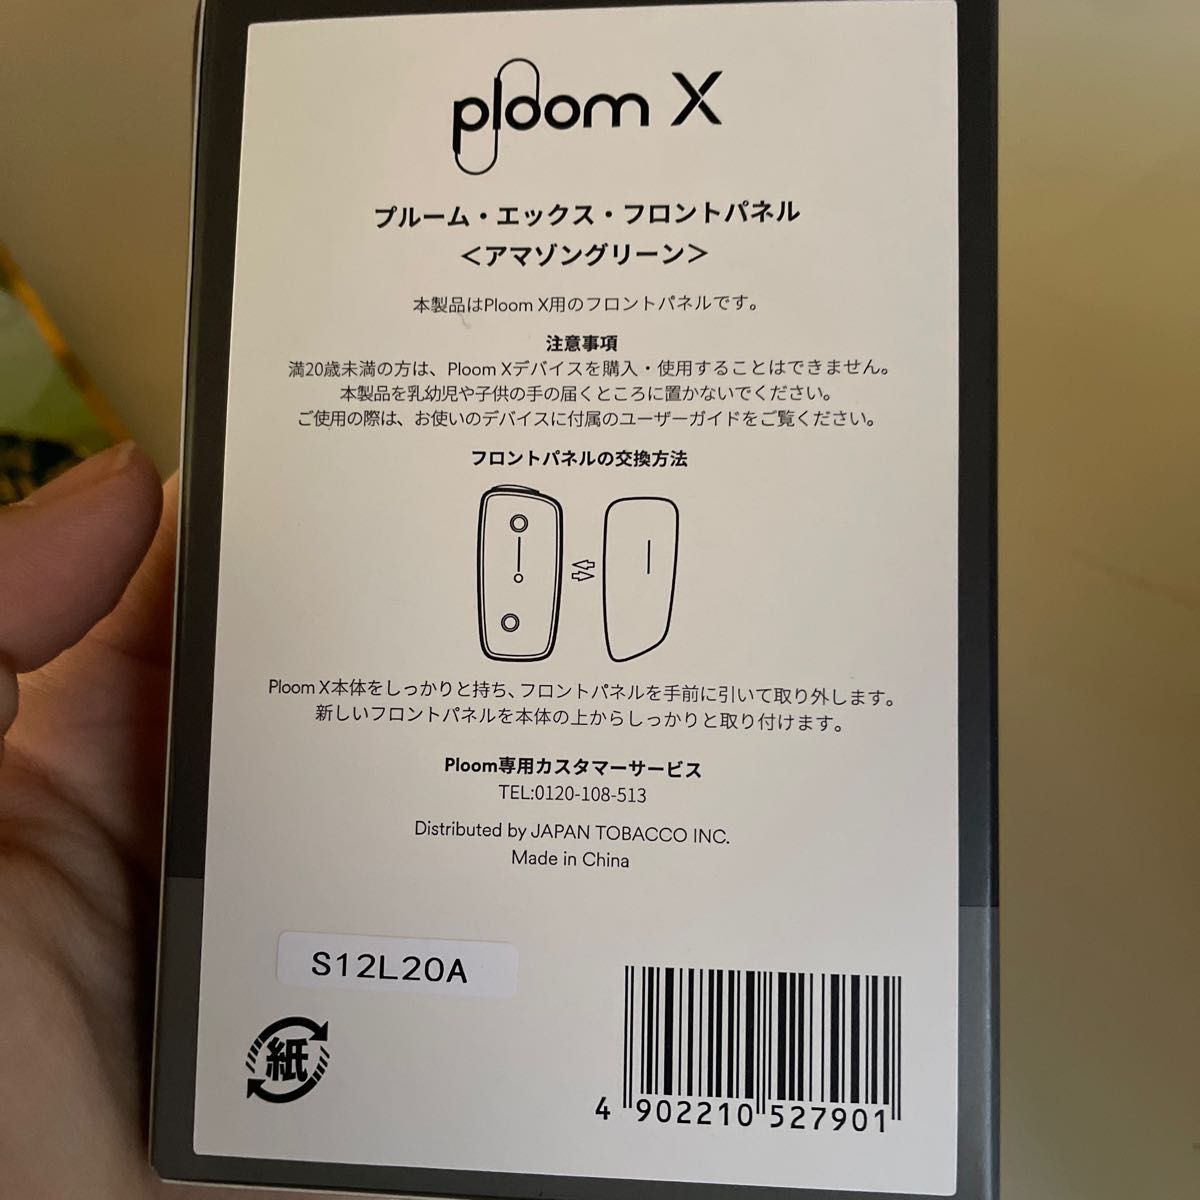 ploom x フロントパネル アマゾングリーンプルームエックス